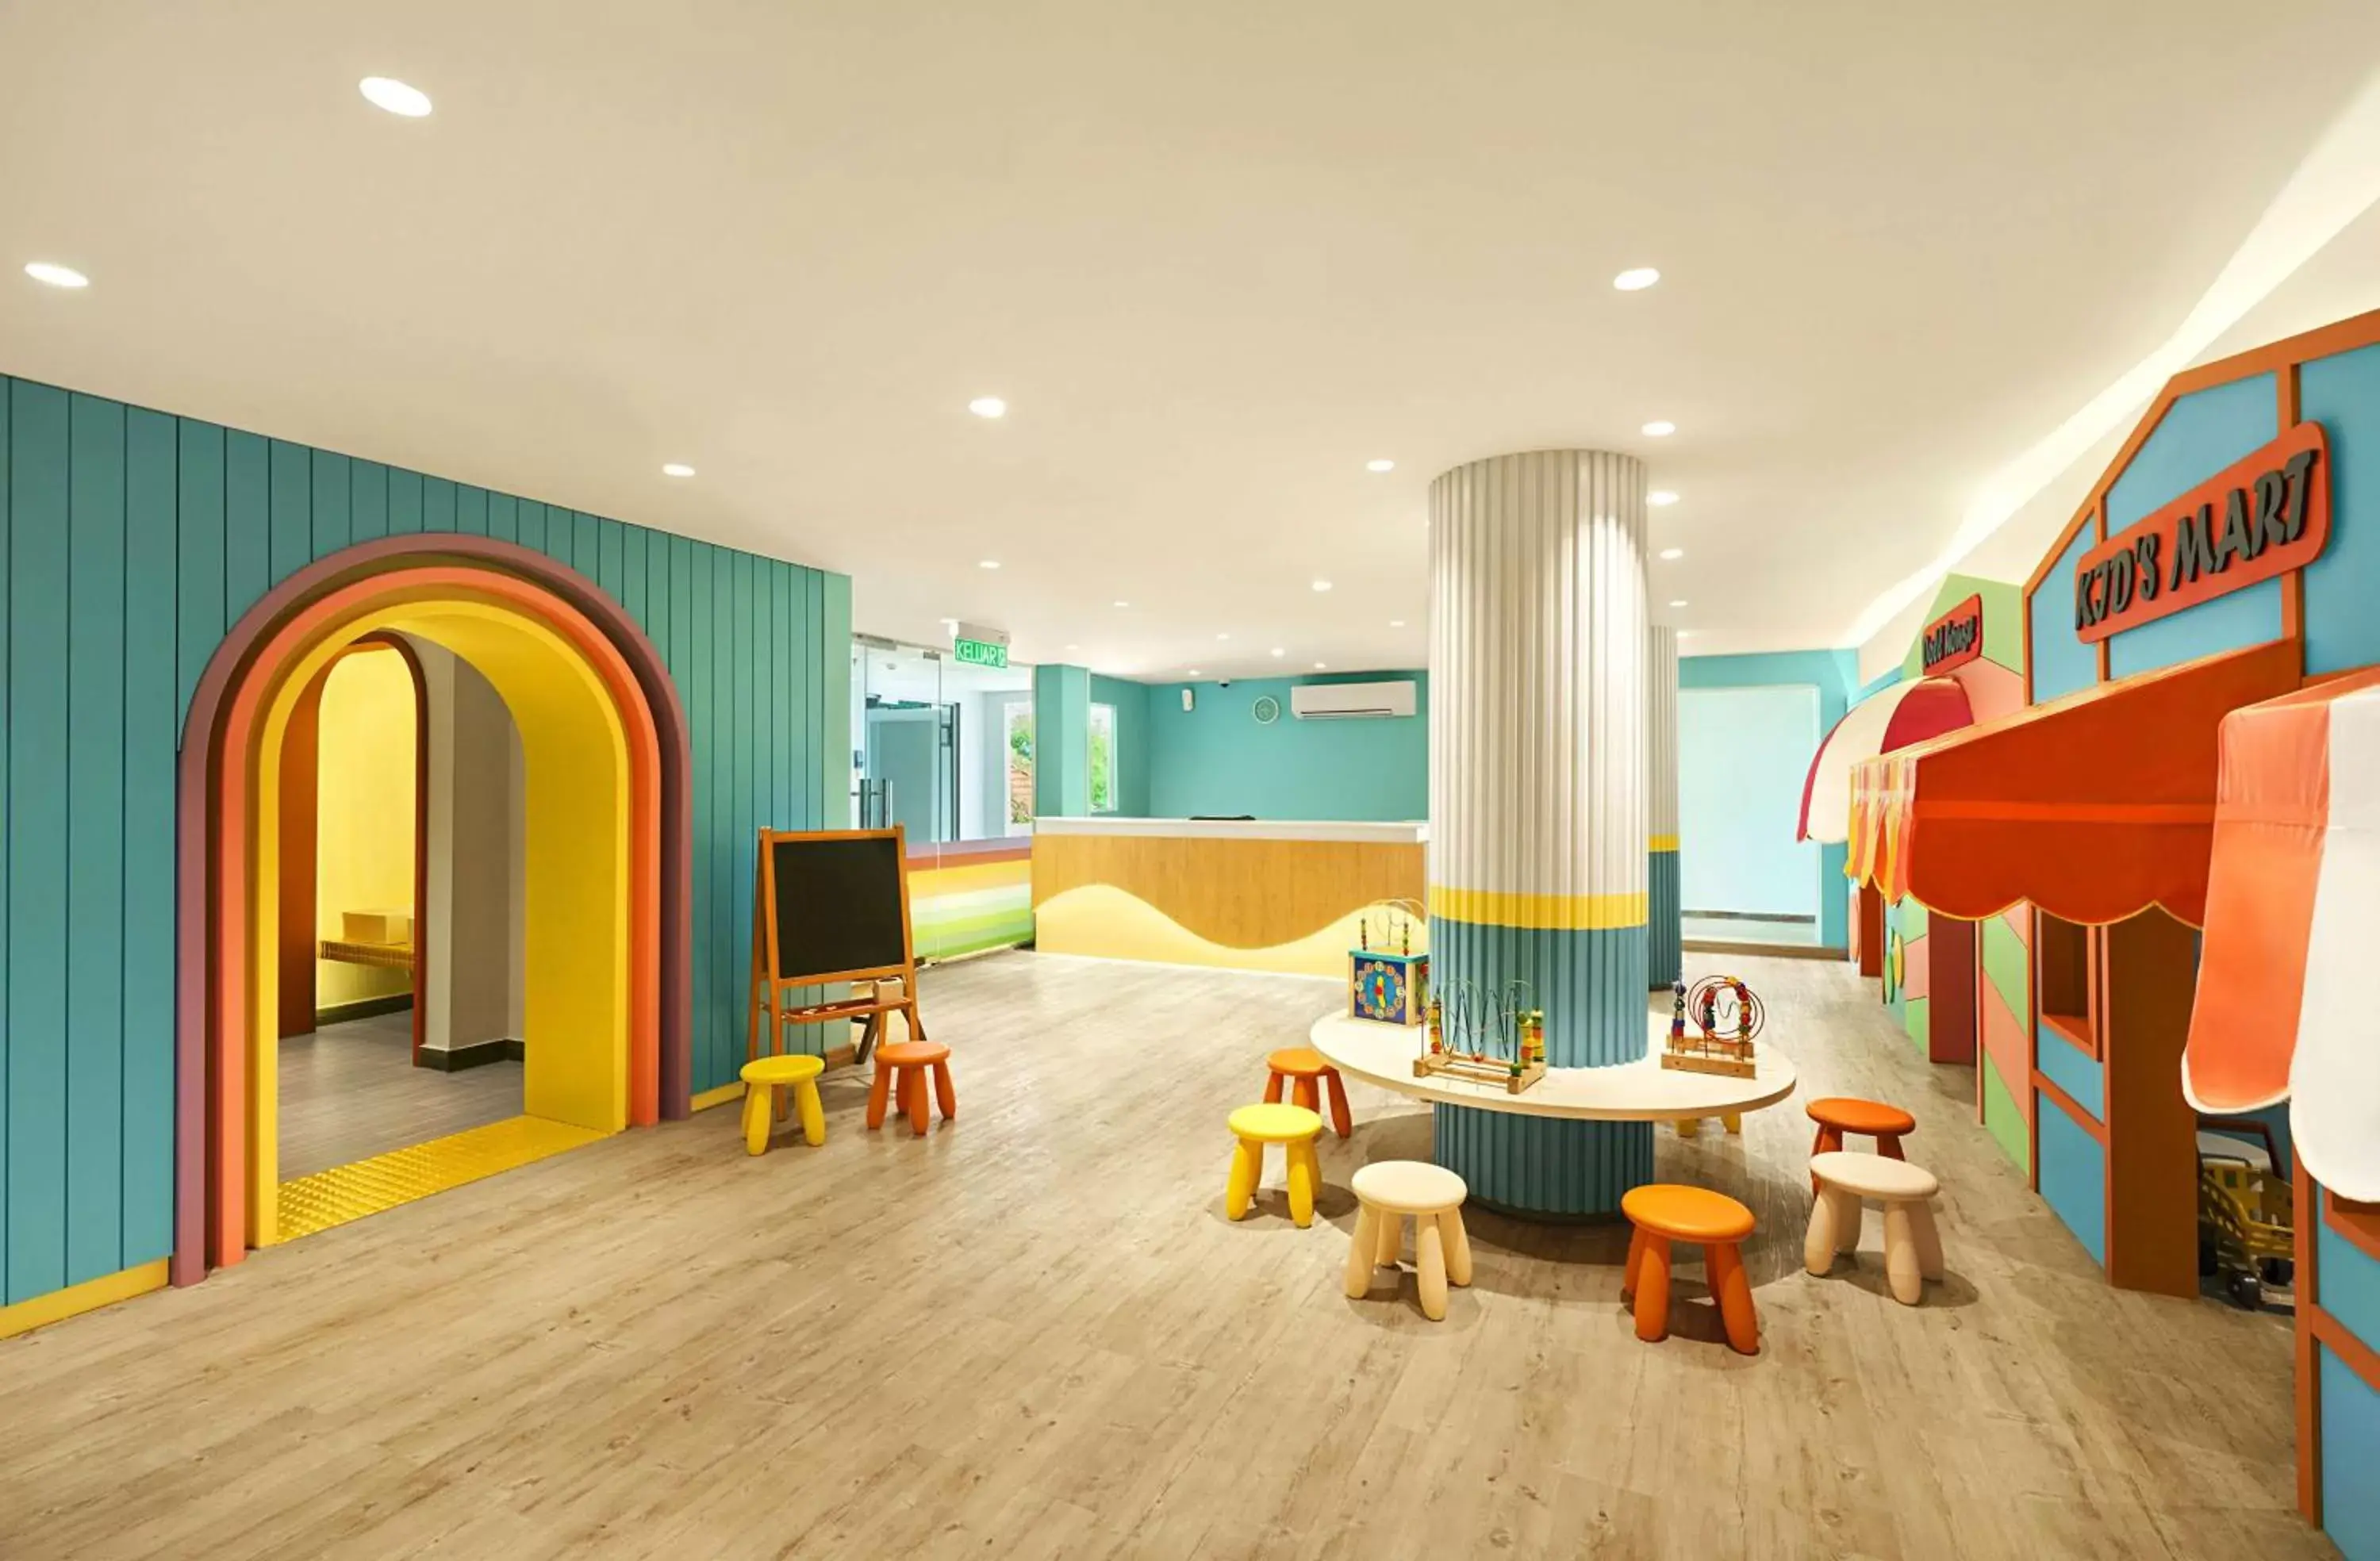 Kids's club in DoubleTree by Hilton Damai Laut